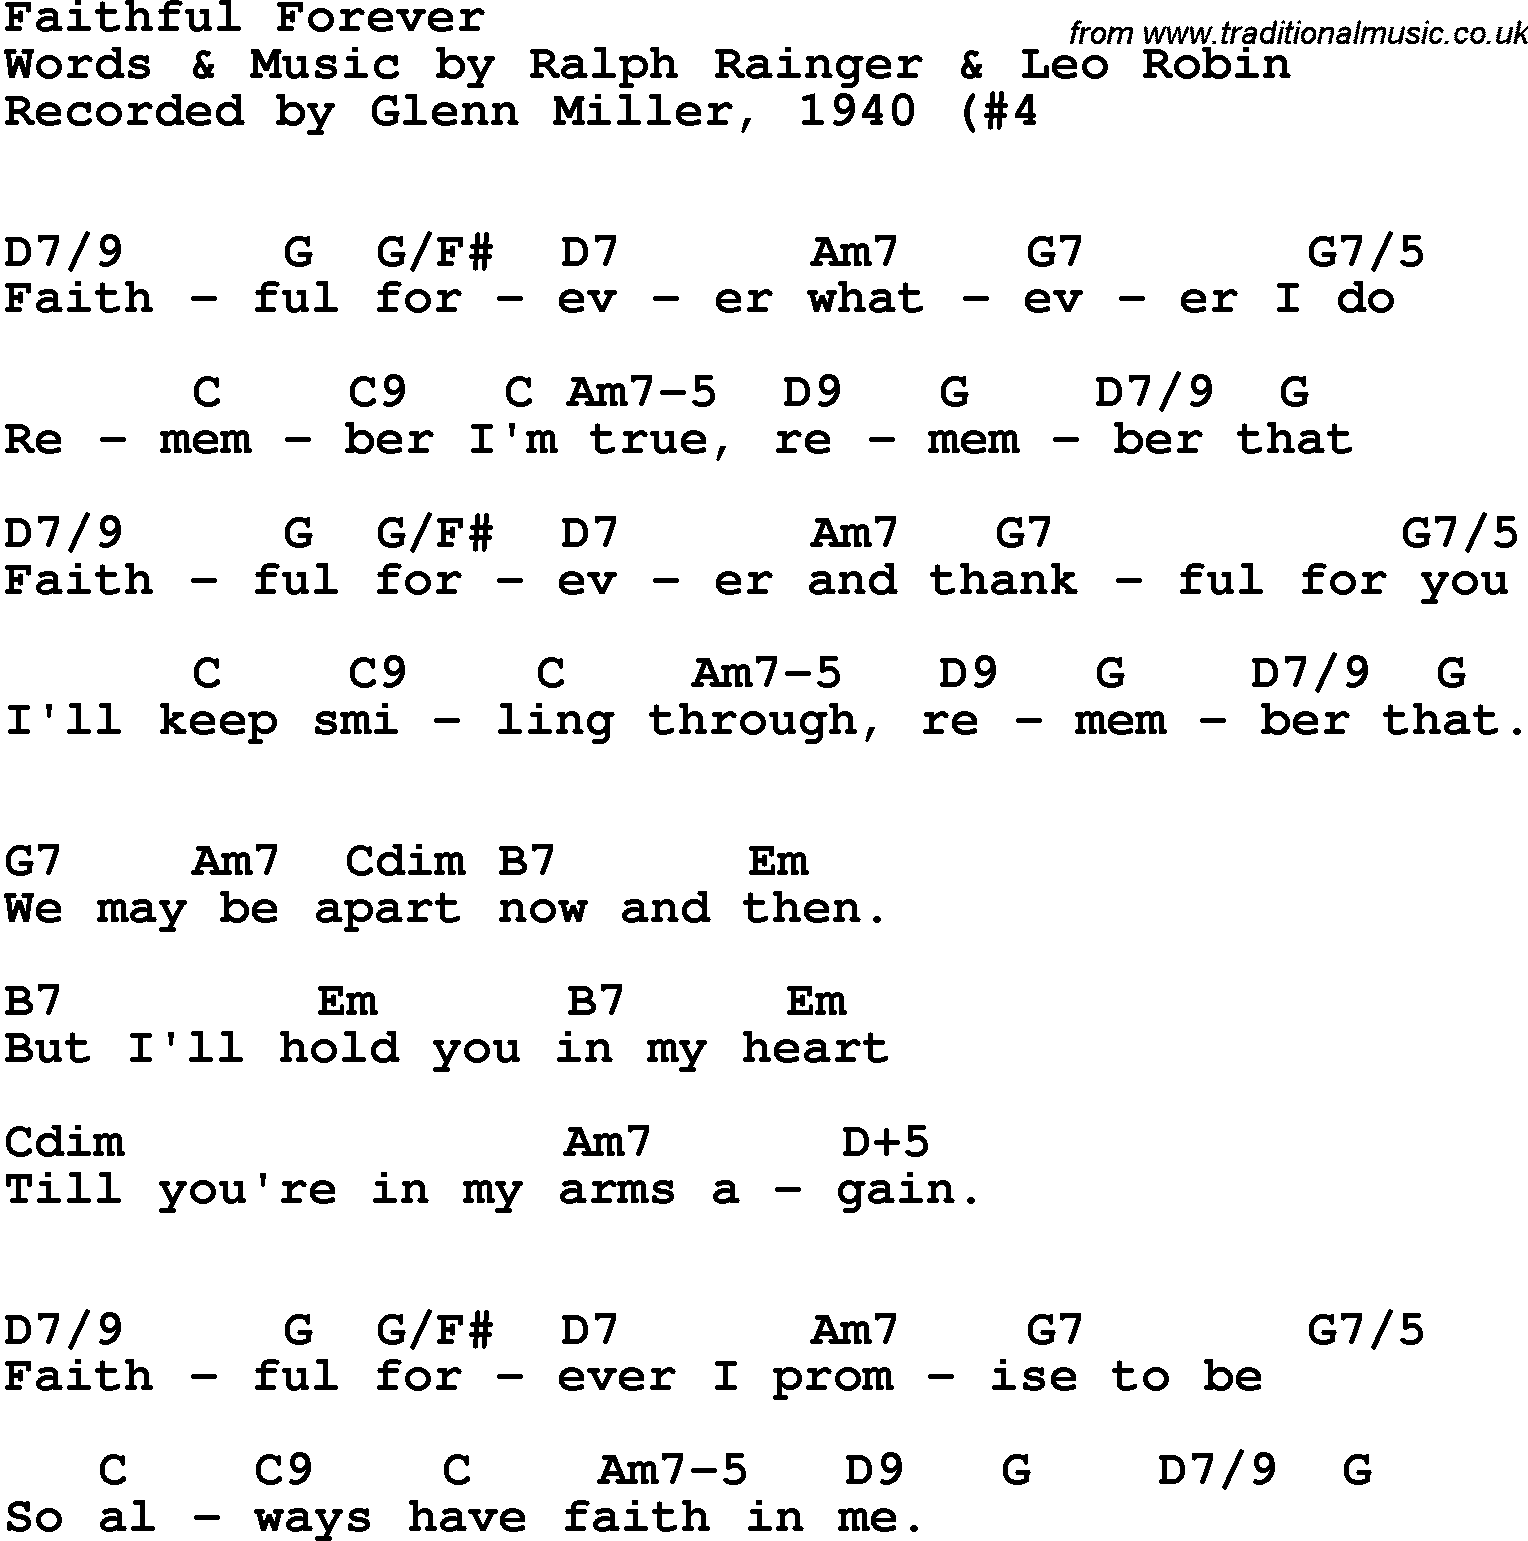 Song Lyrics with guitar chords for Faithful Forever - Glenn Miller, 1940